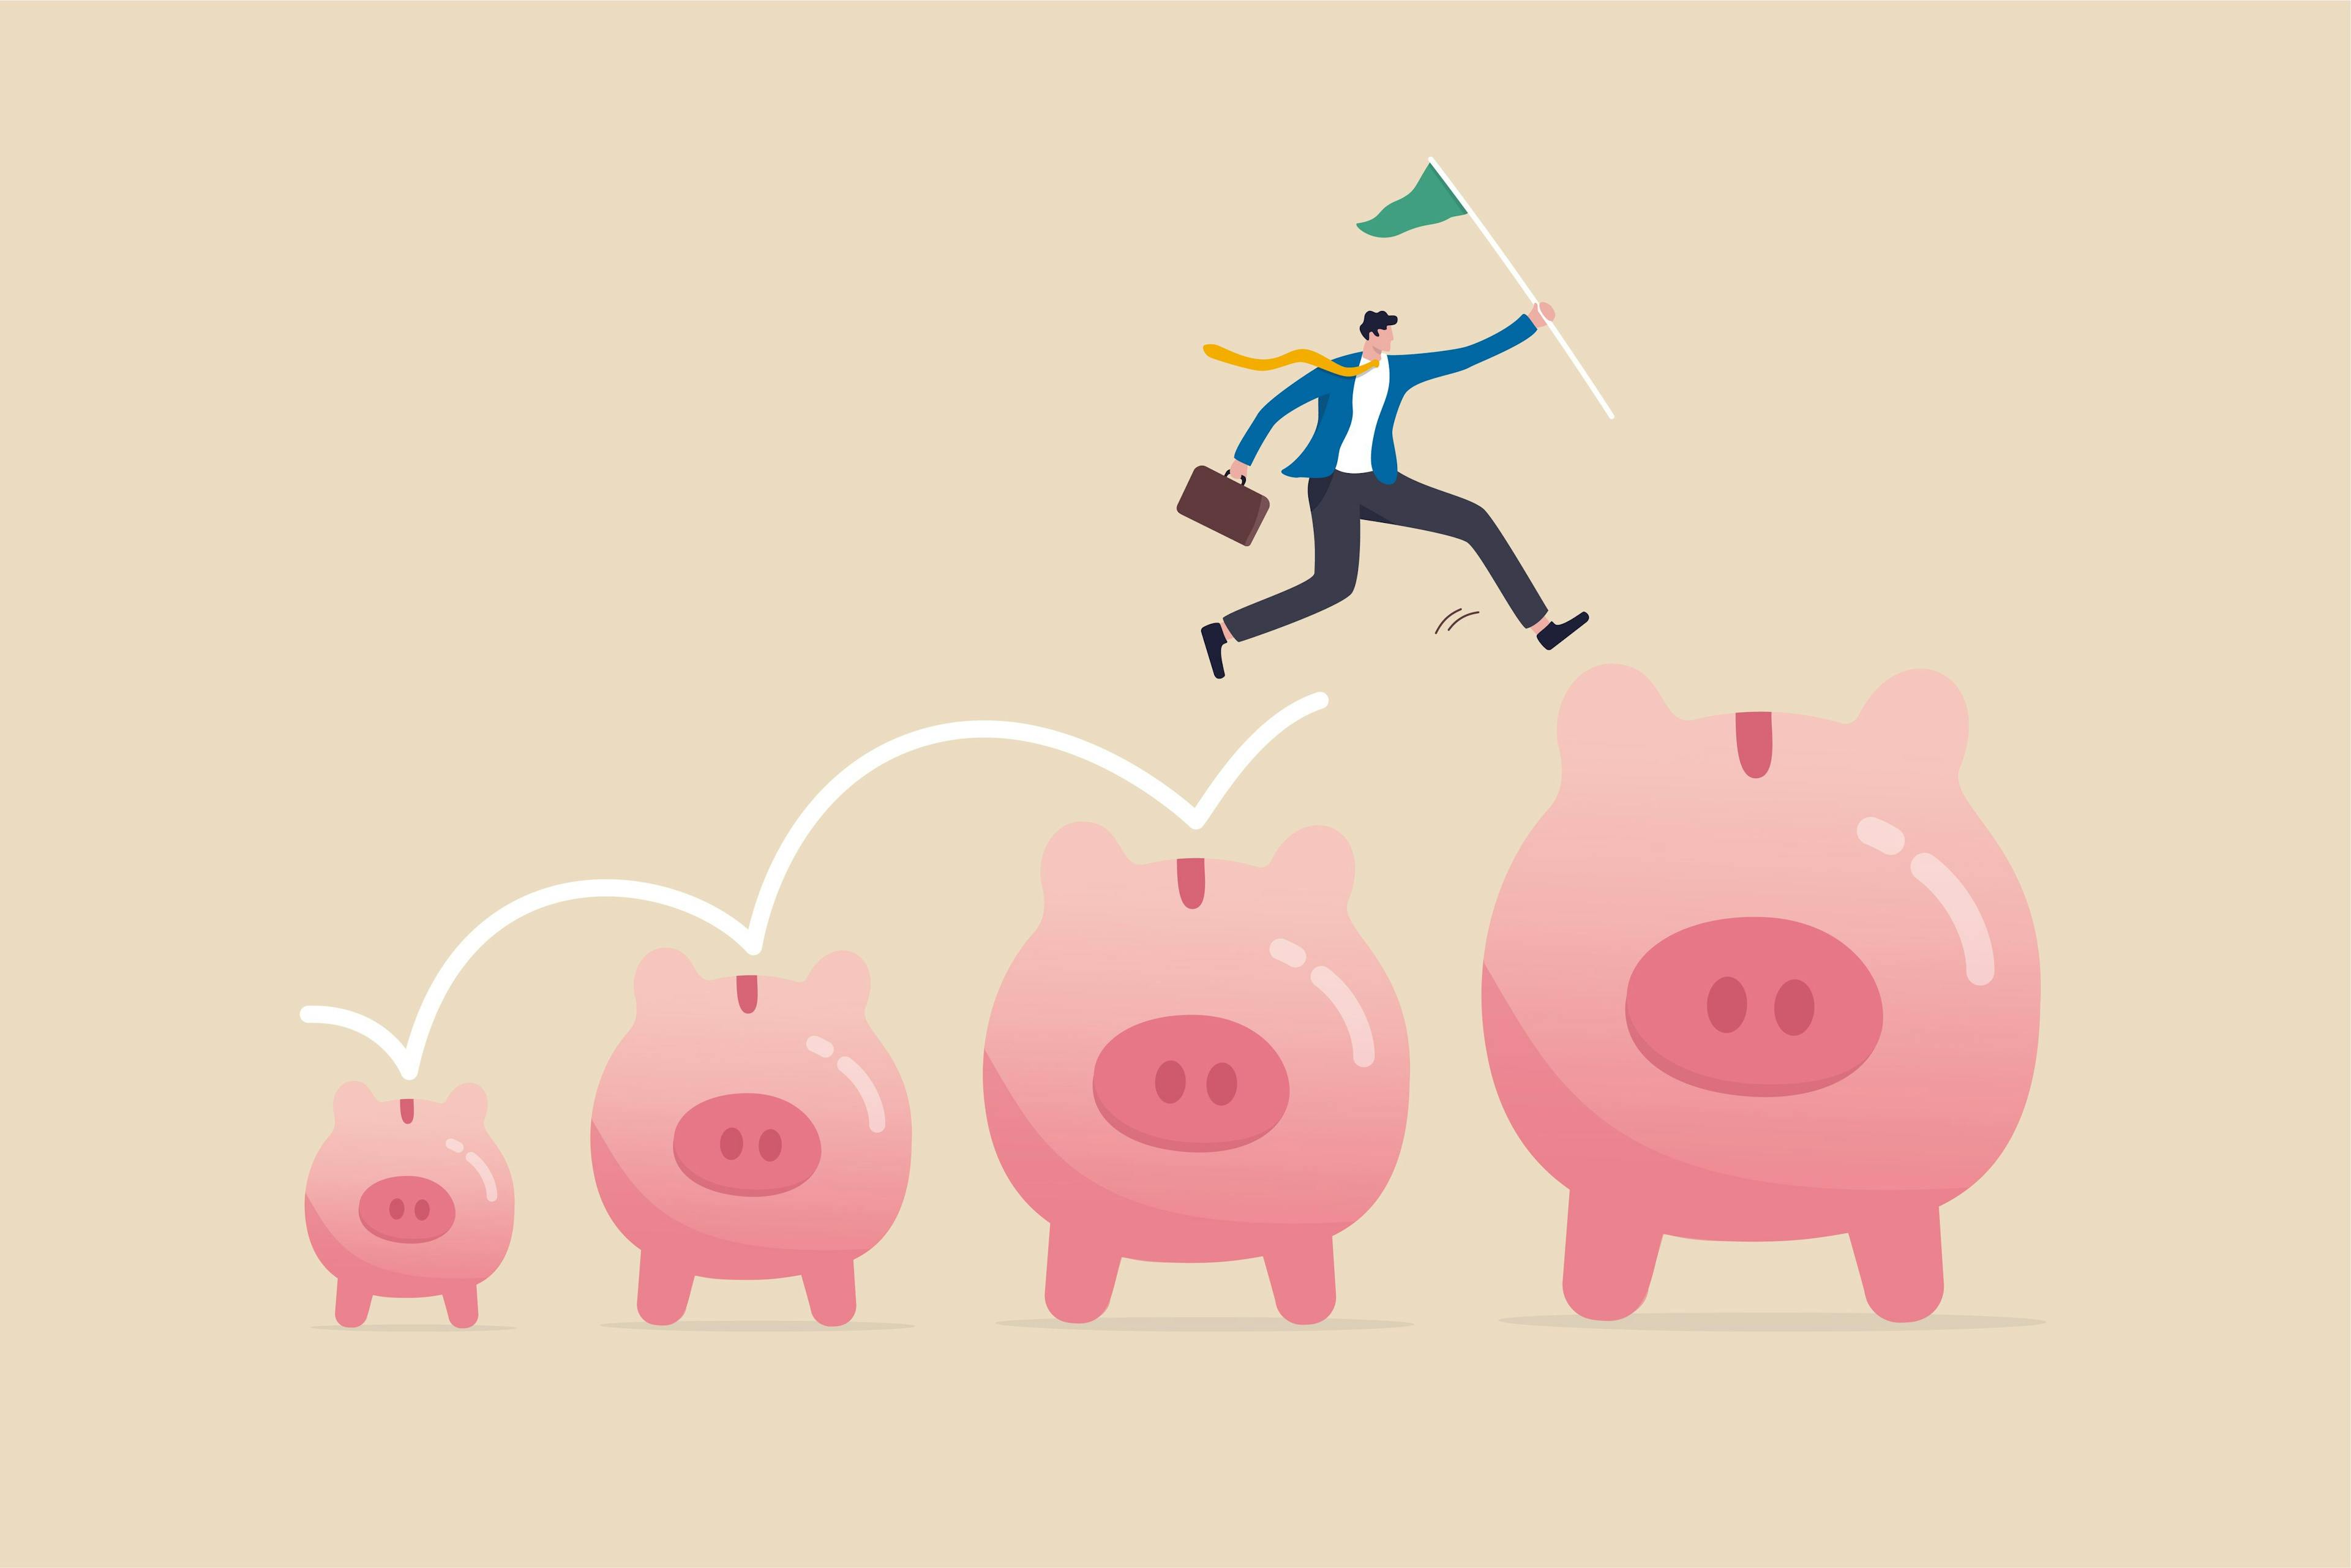 piggy bank jumping finance growing concept